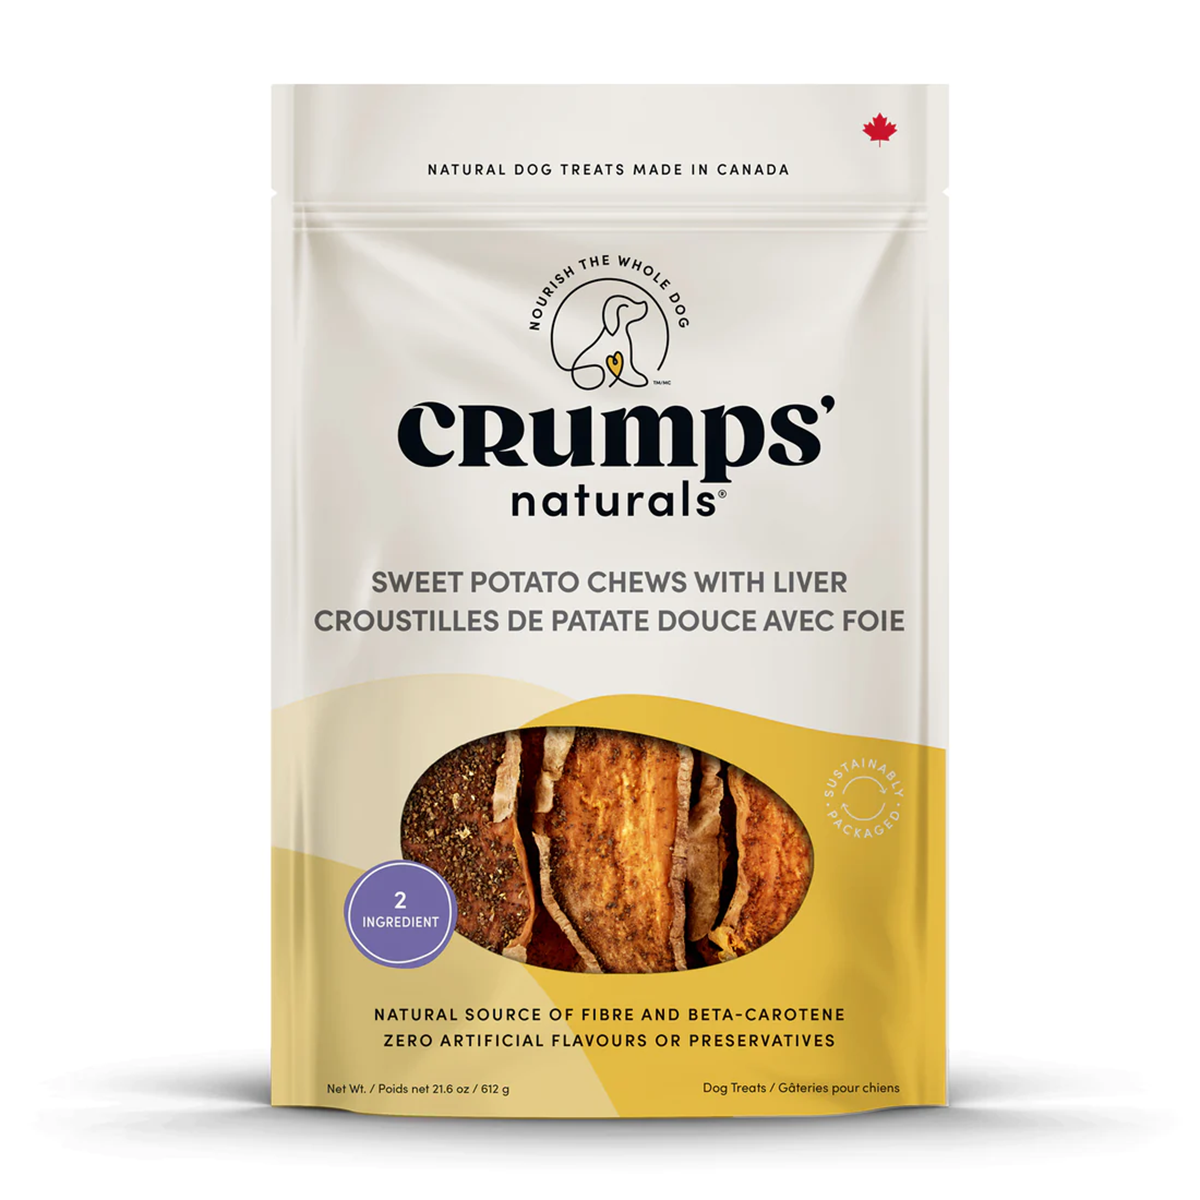 Crumps' Naturals Sweet Potato & Liver Chews Dog Treats